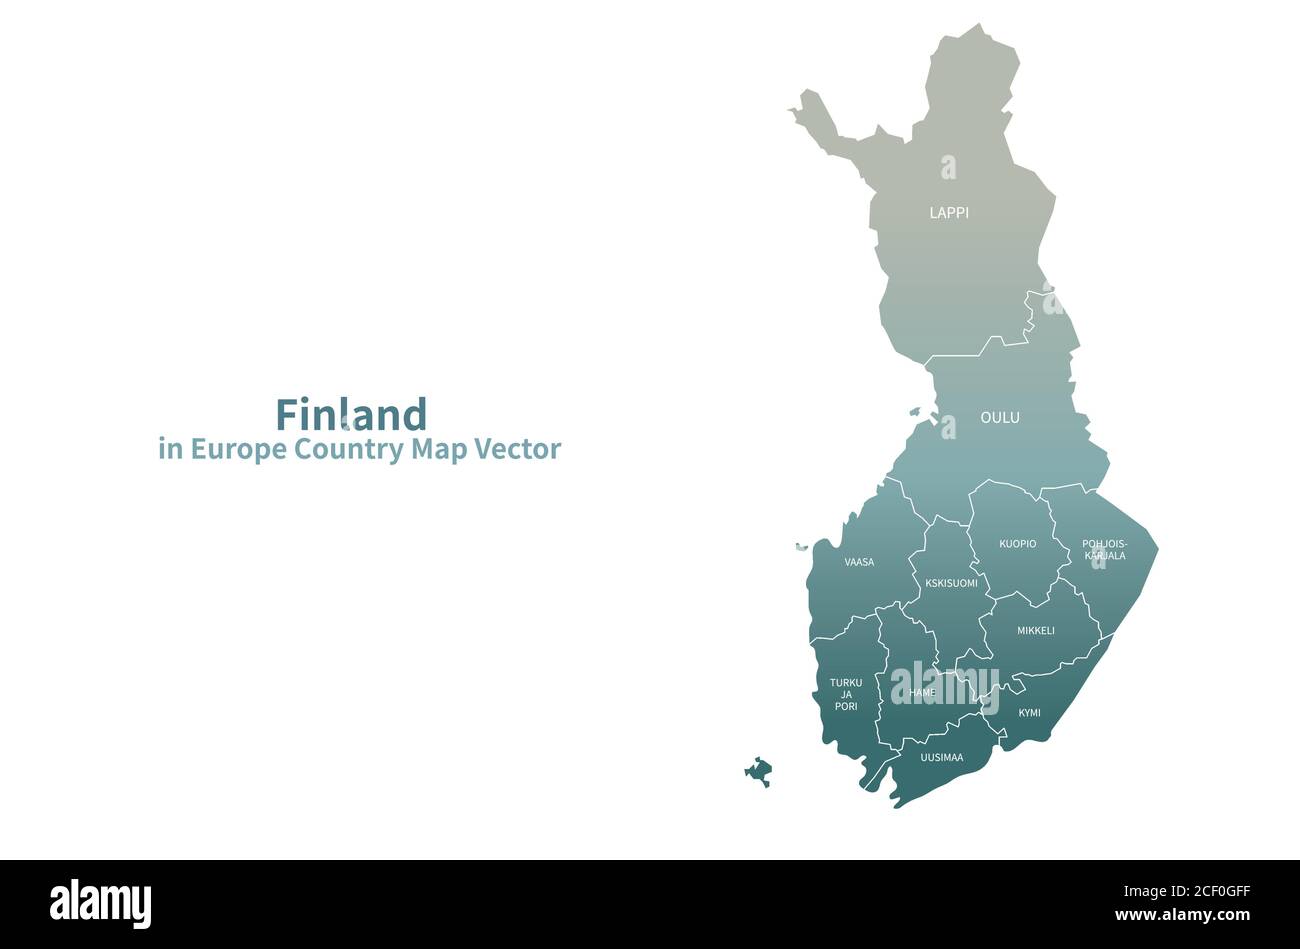 Finland vector map. European Country Map Green Series. Stock Vector